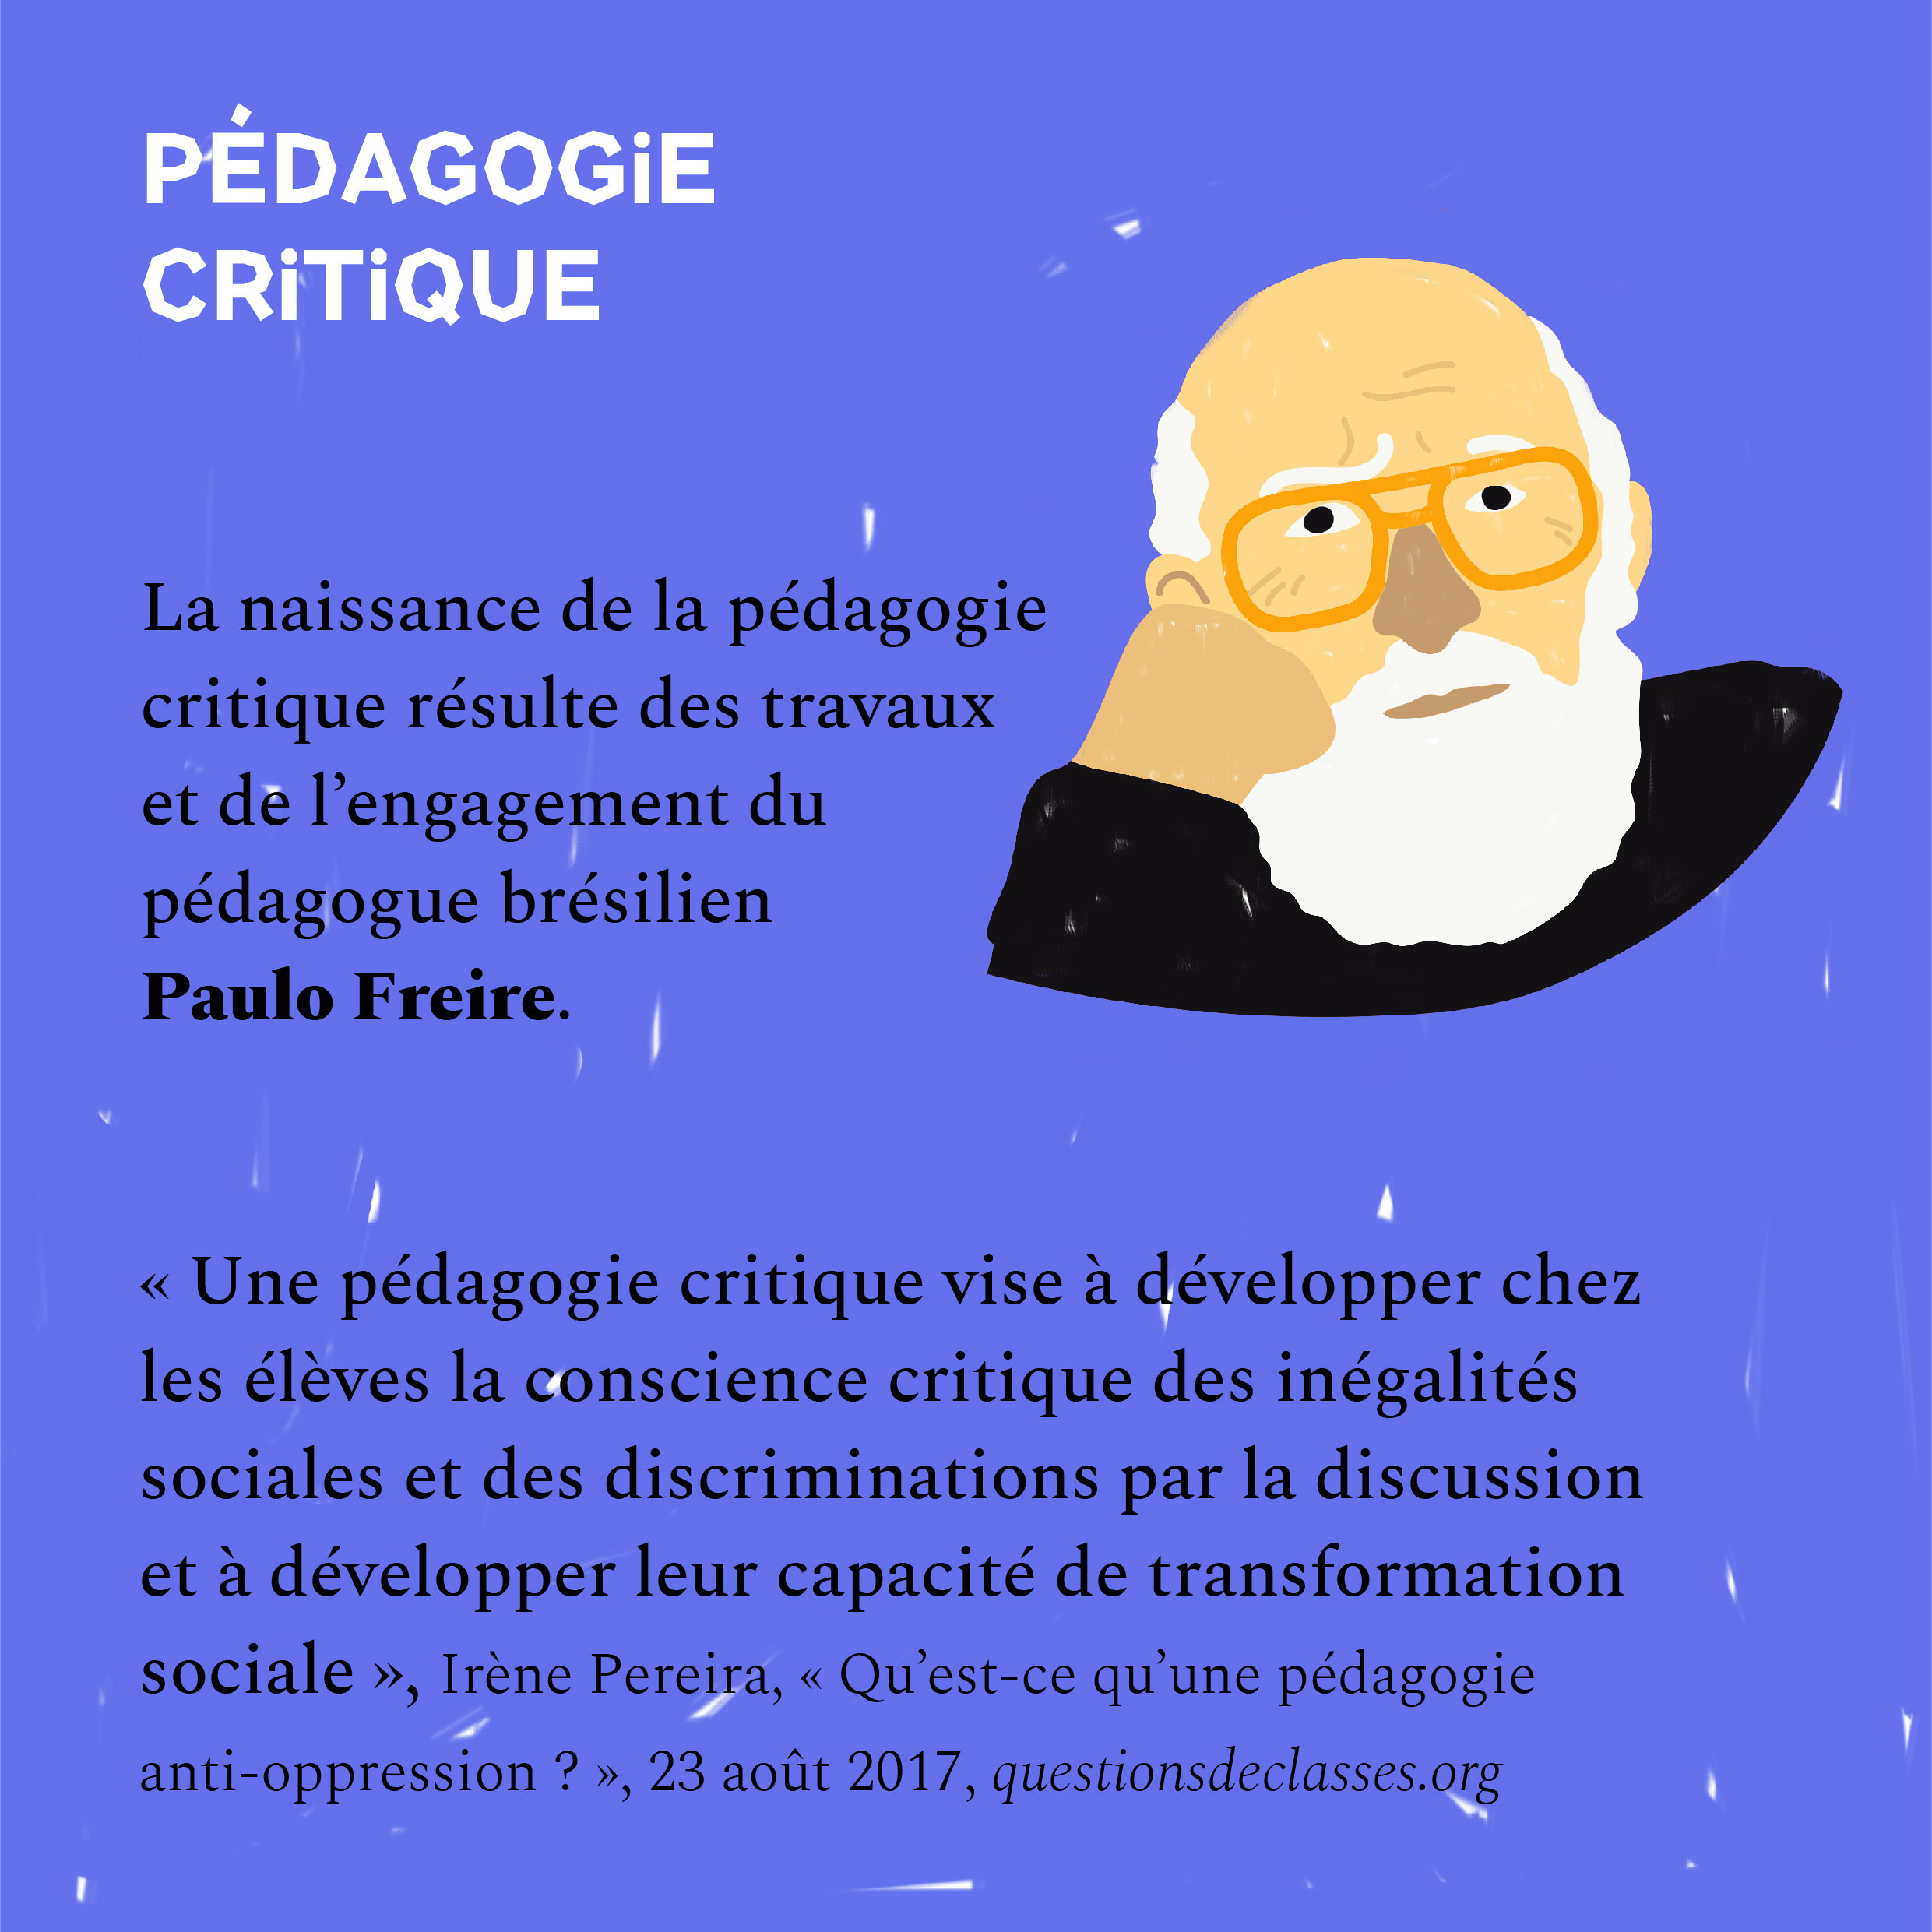 Visuels didactiques sur la pédagogie critique : Paulo Freire